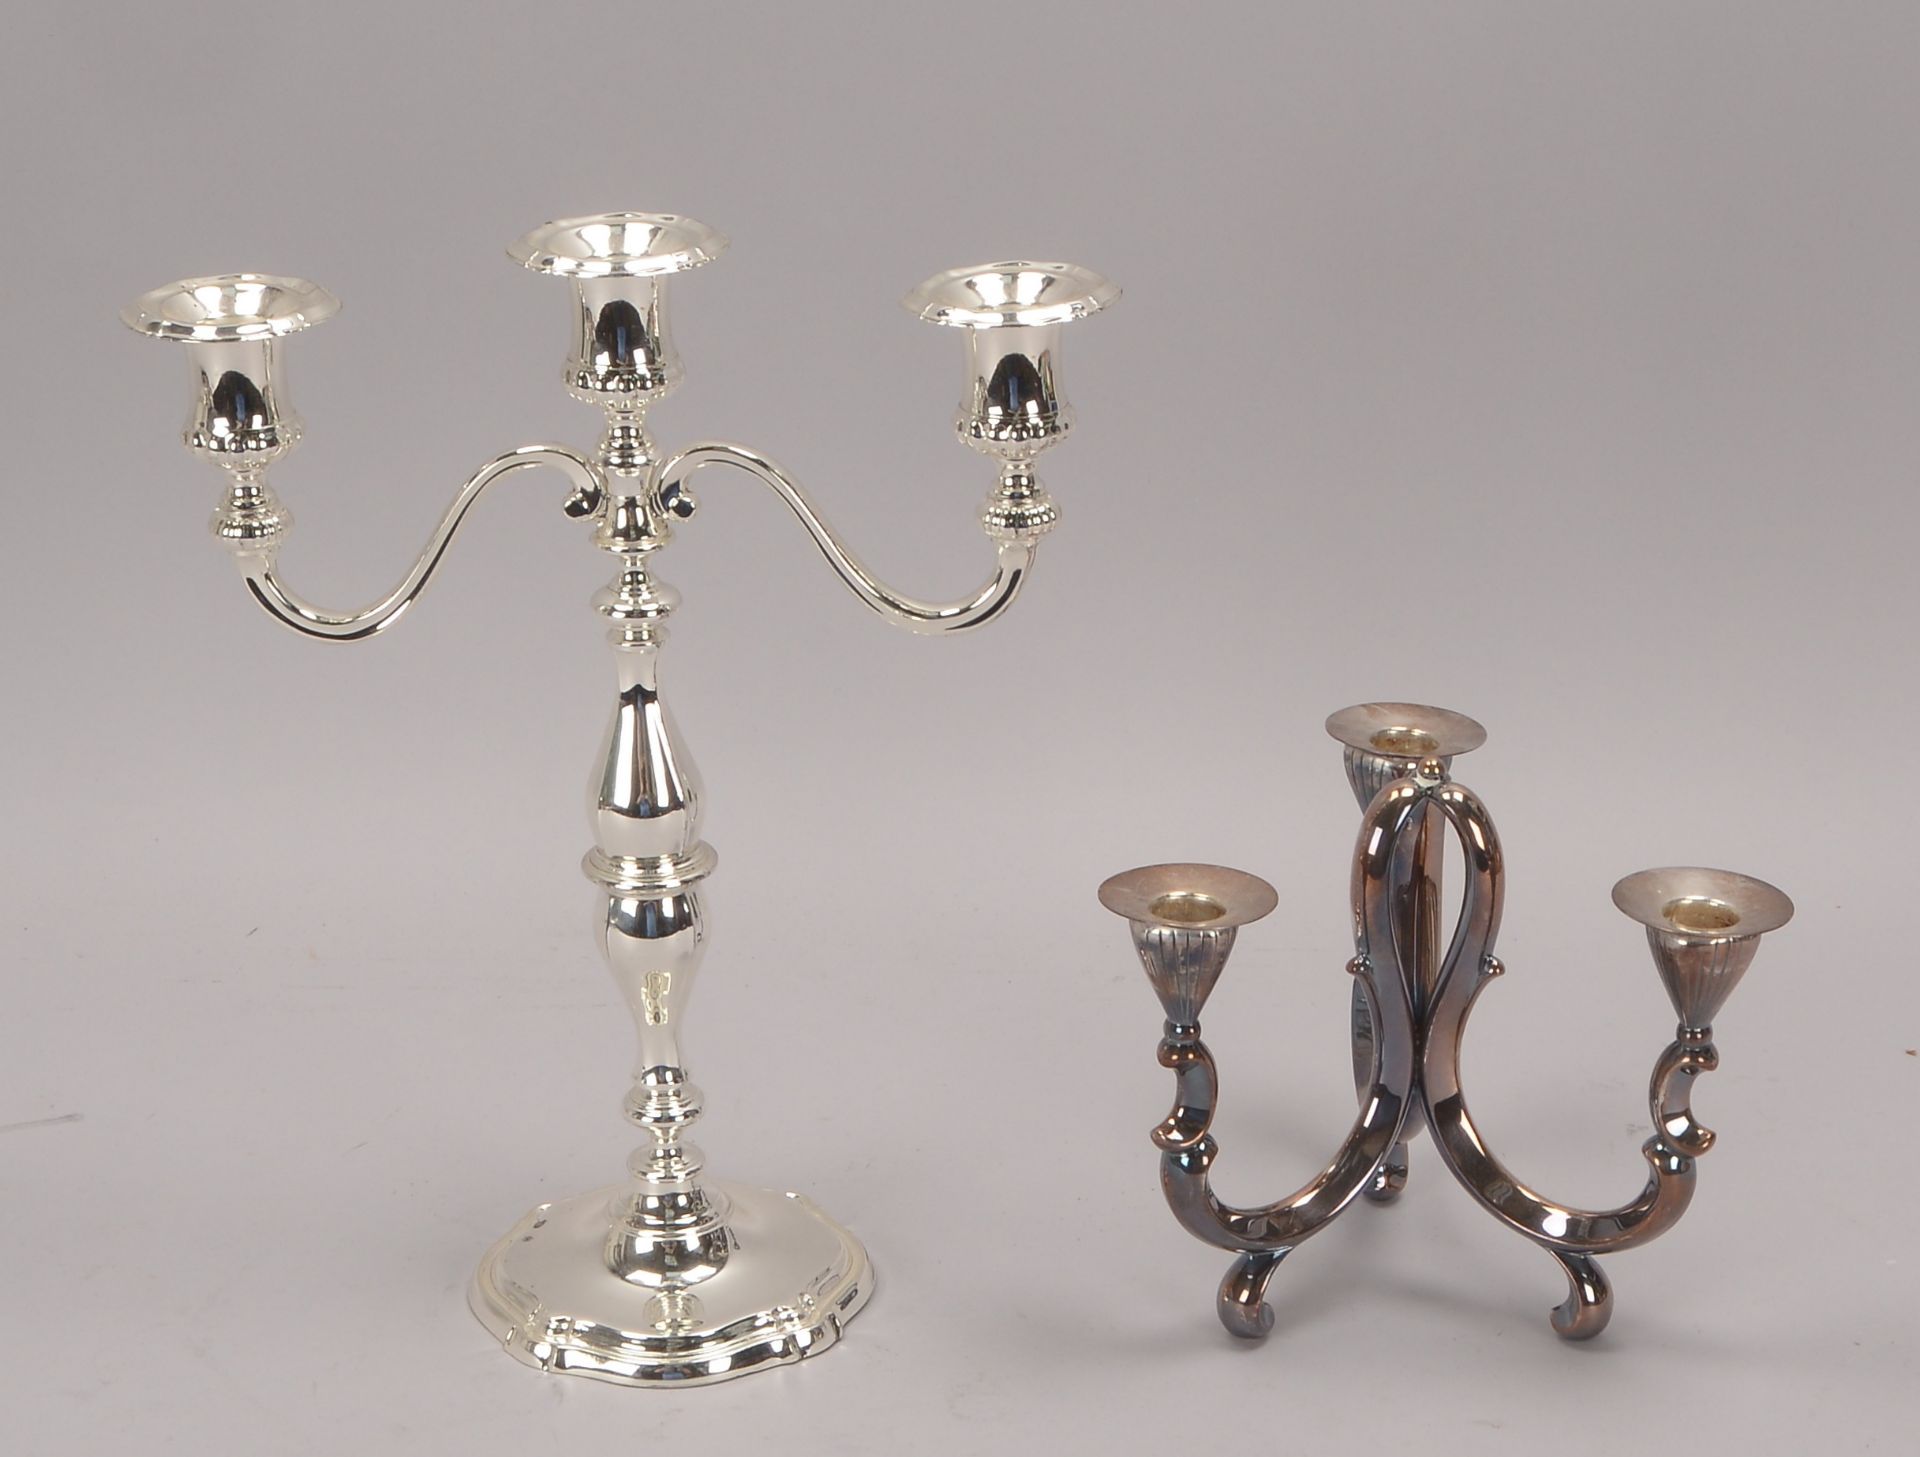 2 Kerzenleuchter, jeweils 3-flammig, versilbert/davon 1x WMF, Hoehe 15 cm, und Hoehe 34 cm - Image 2 of 2